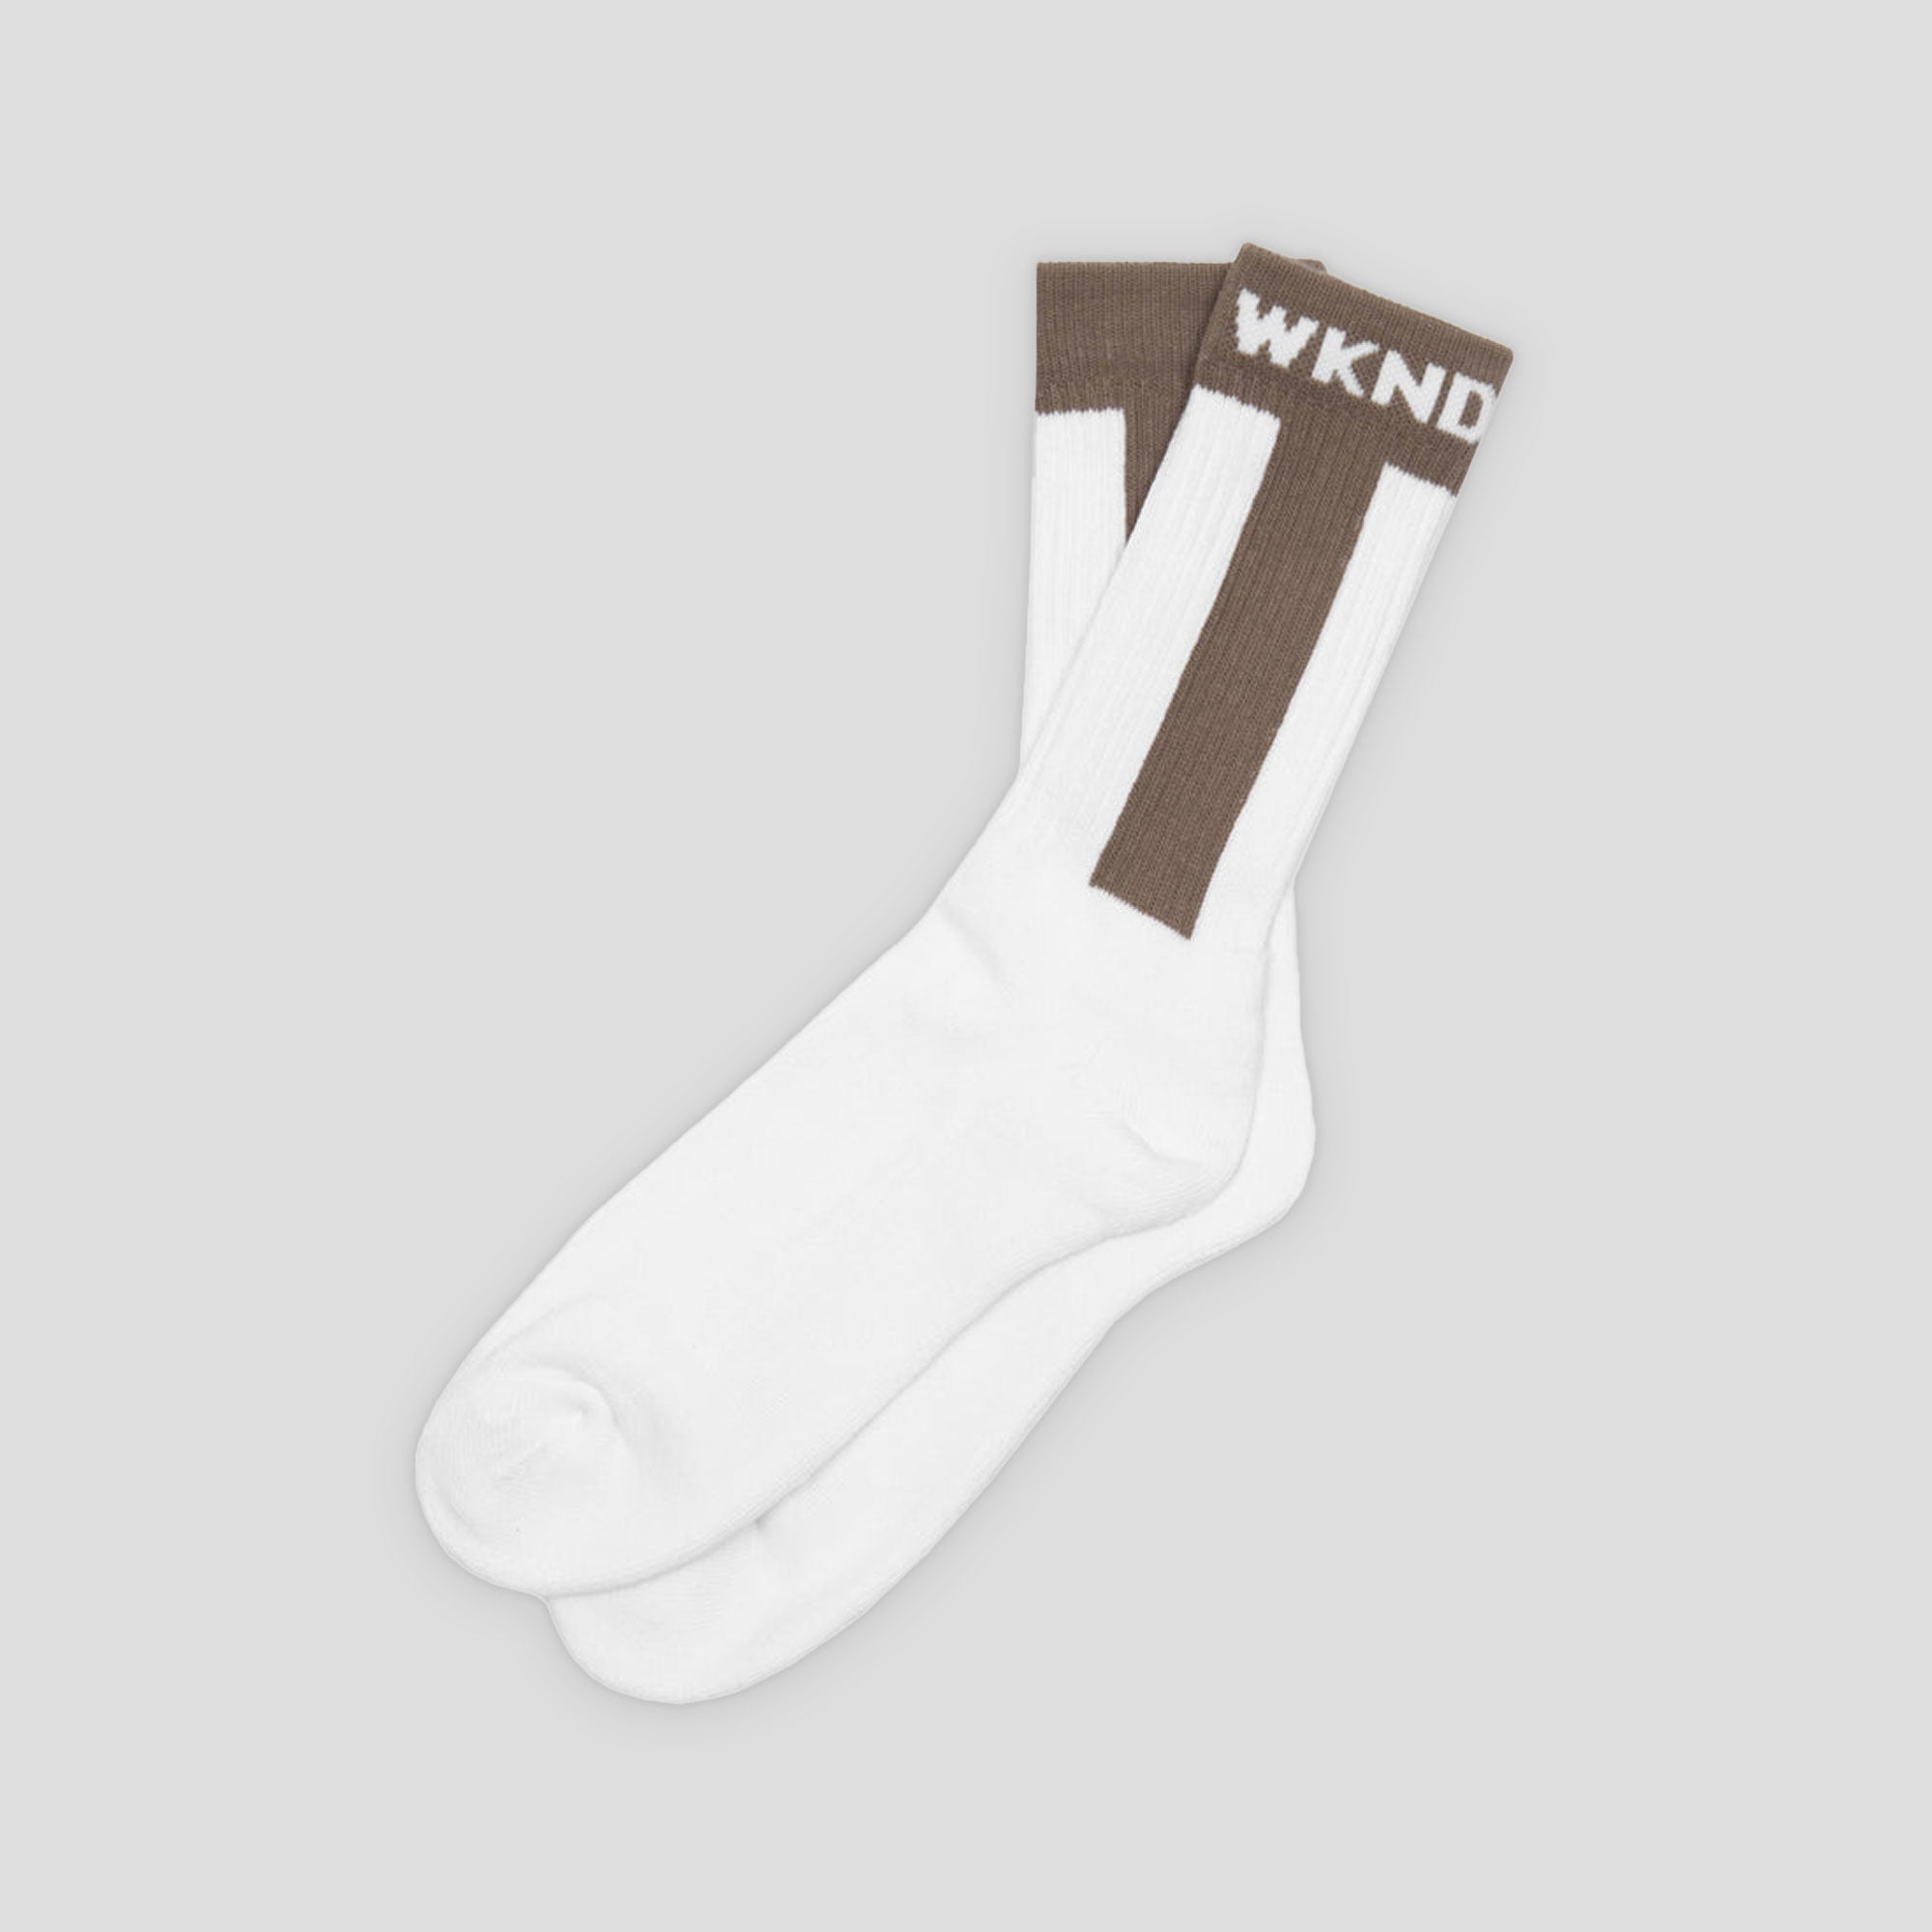 WKND Baseball Socks - White / Grey